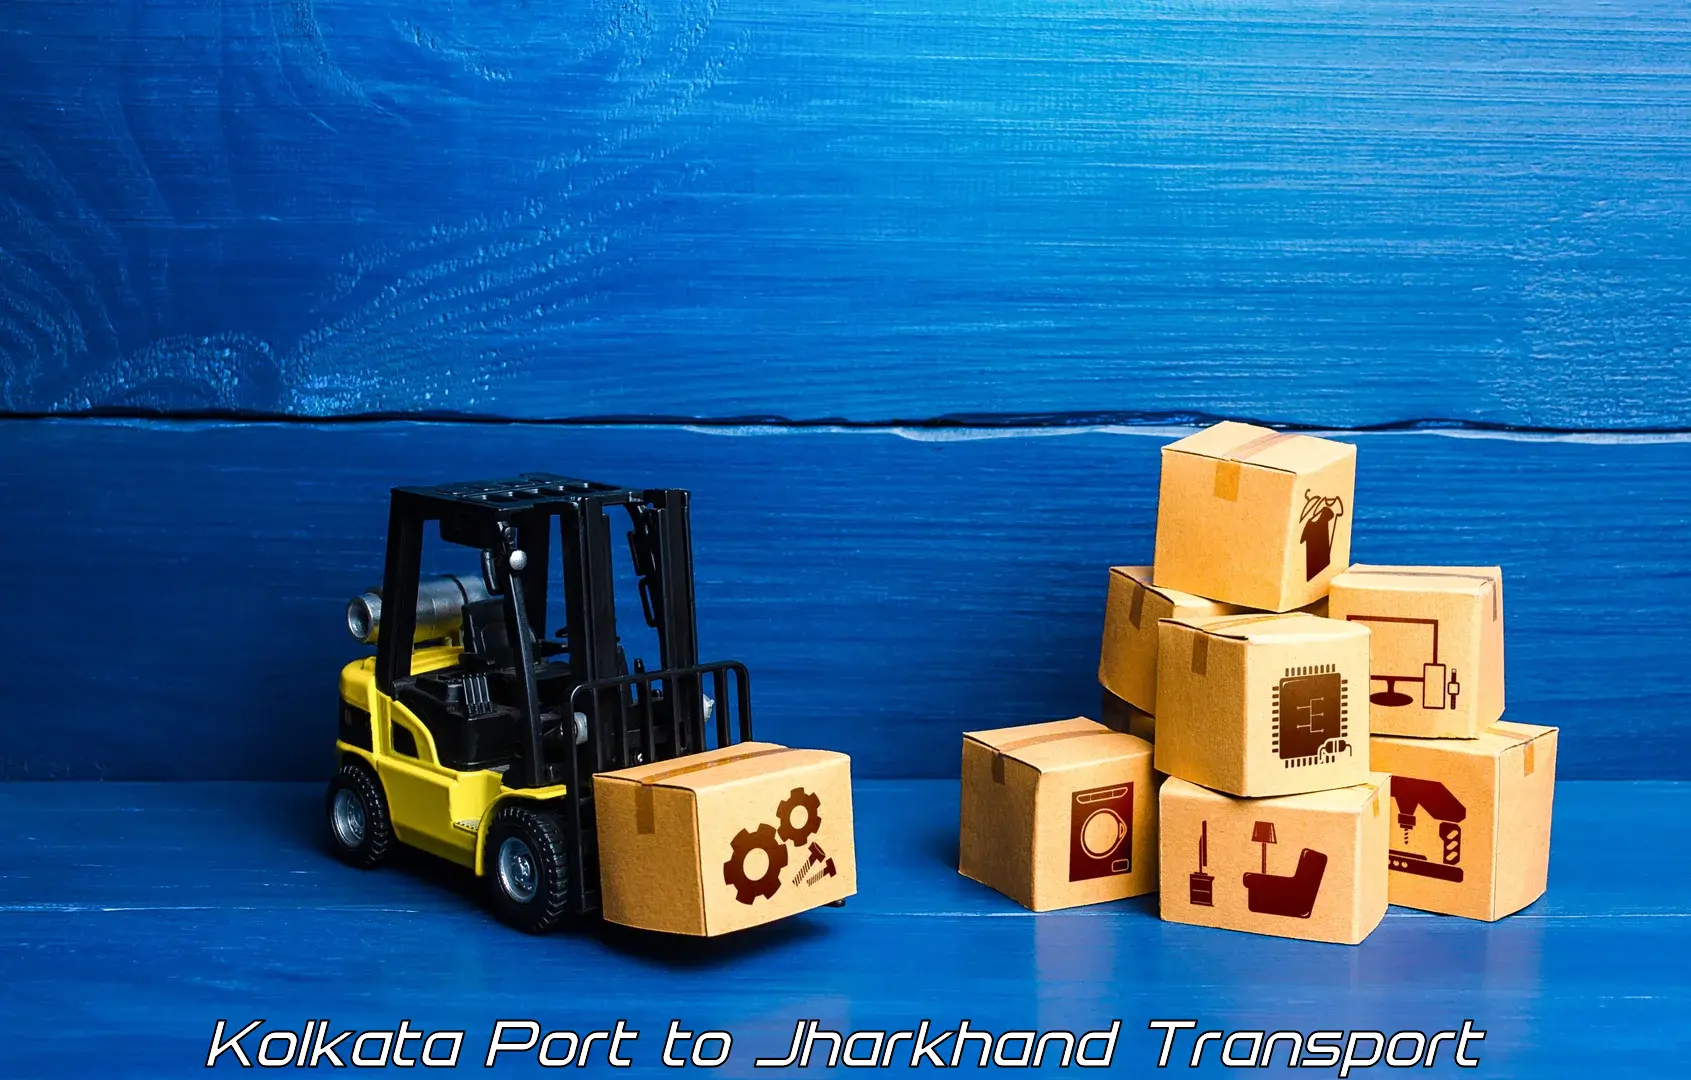 Pick up transport service Kolkata Port to Garhwa